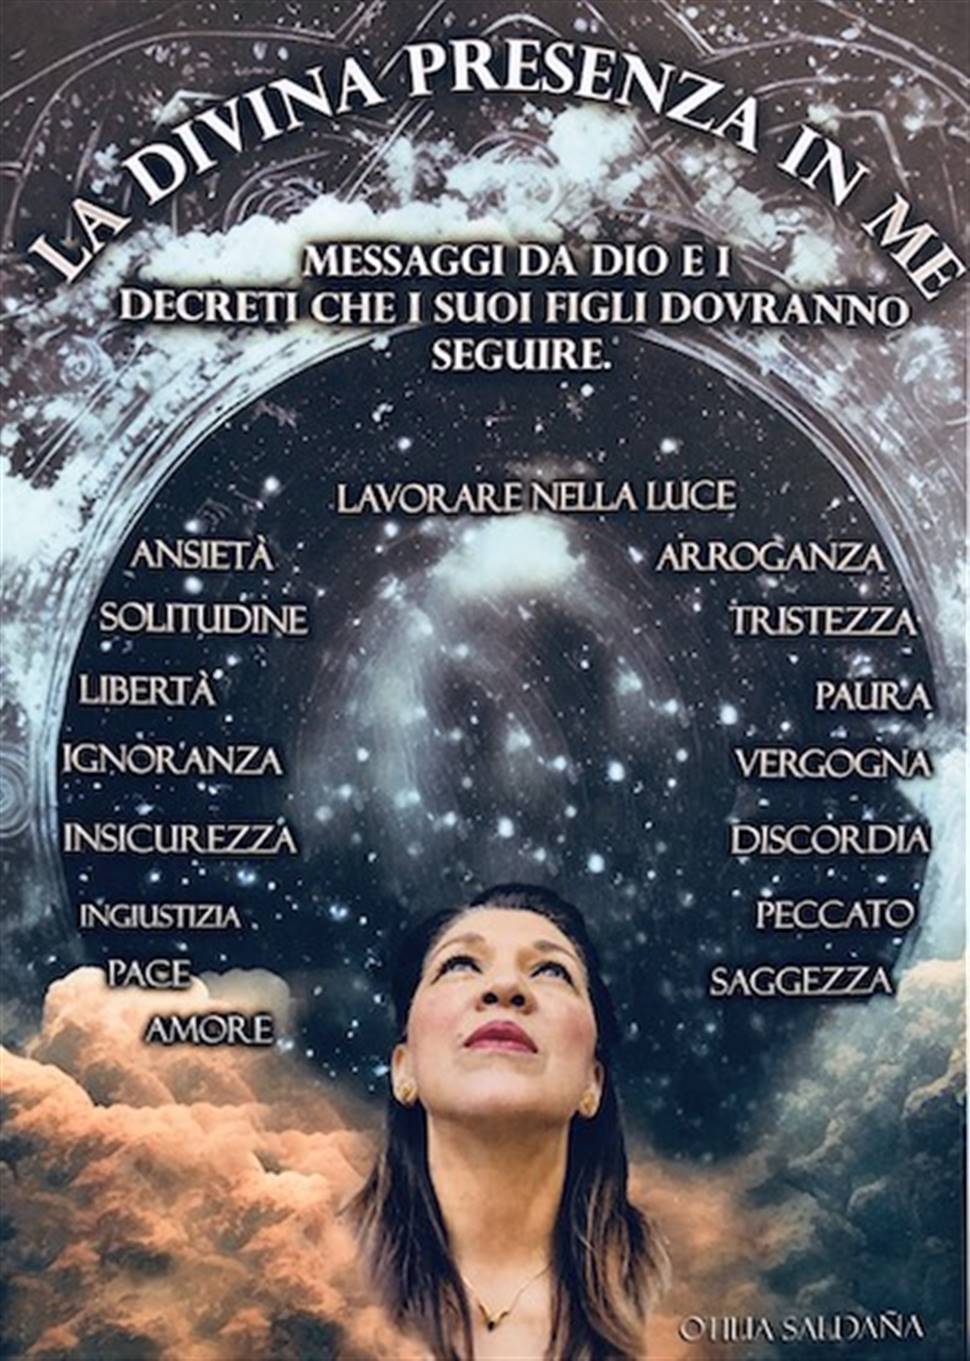 Martedì 28 novembre alla Sala Xenia di Trieste presentazione del libro di Otilia Saldana “La divina presenza in me”